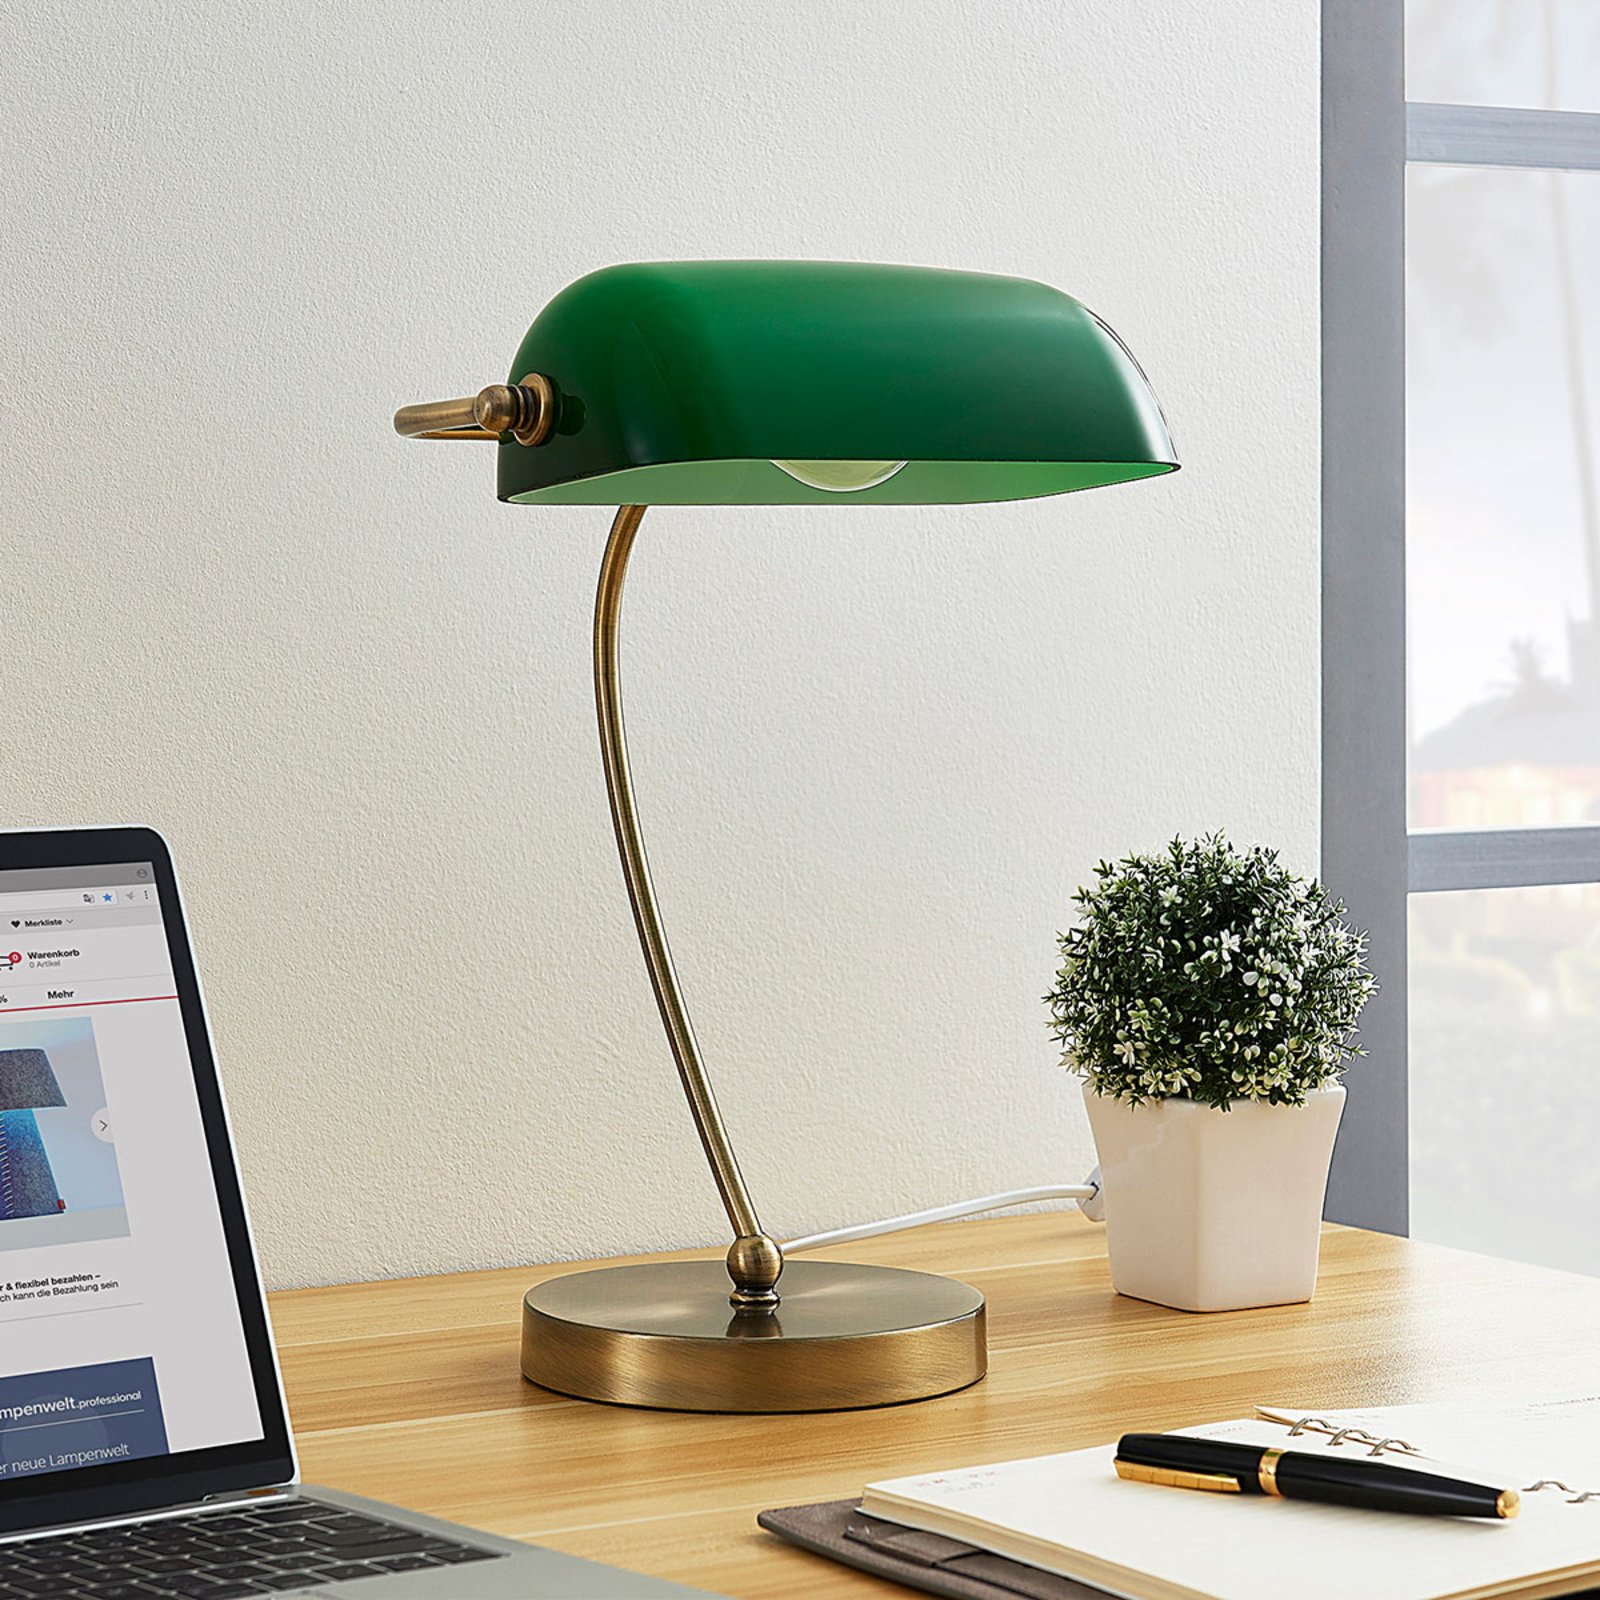 Selea – bankárska lampa so zeleným tienidlom